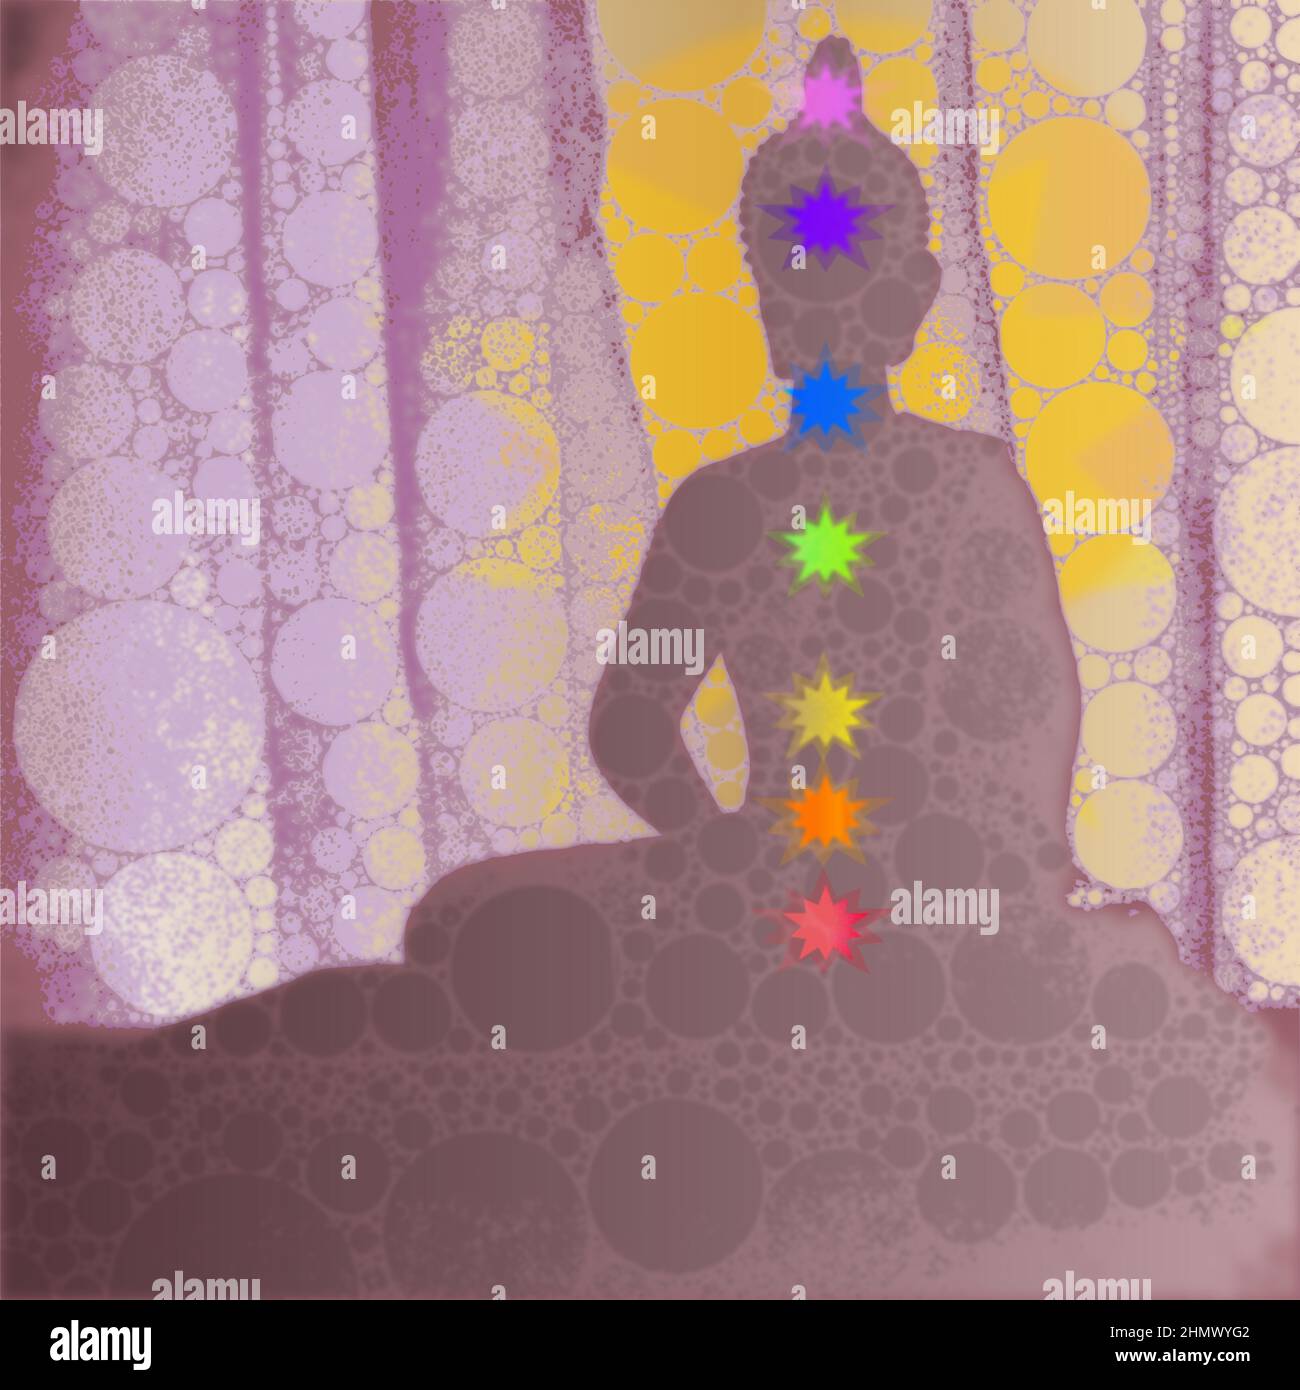 Bouddha violet avec sept chakras. Le bouddha a une aura dorée et se trouve devant des rideaux Illustration de Vecteur